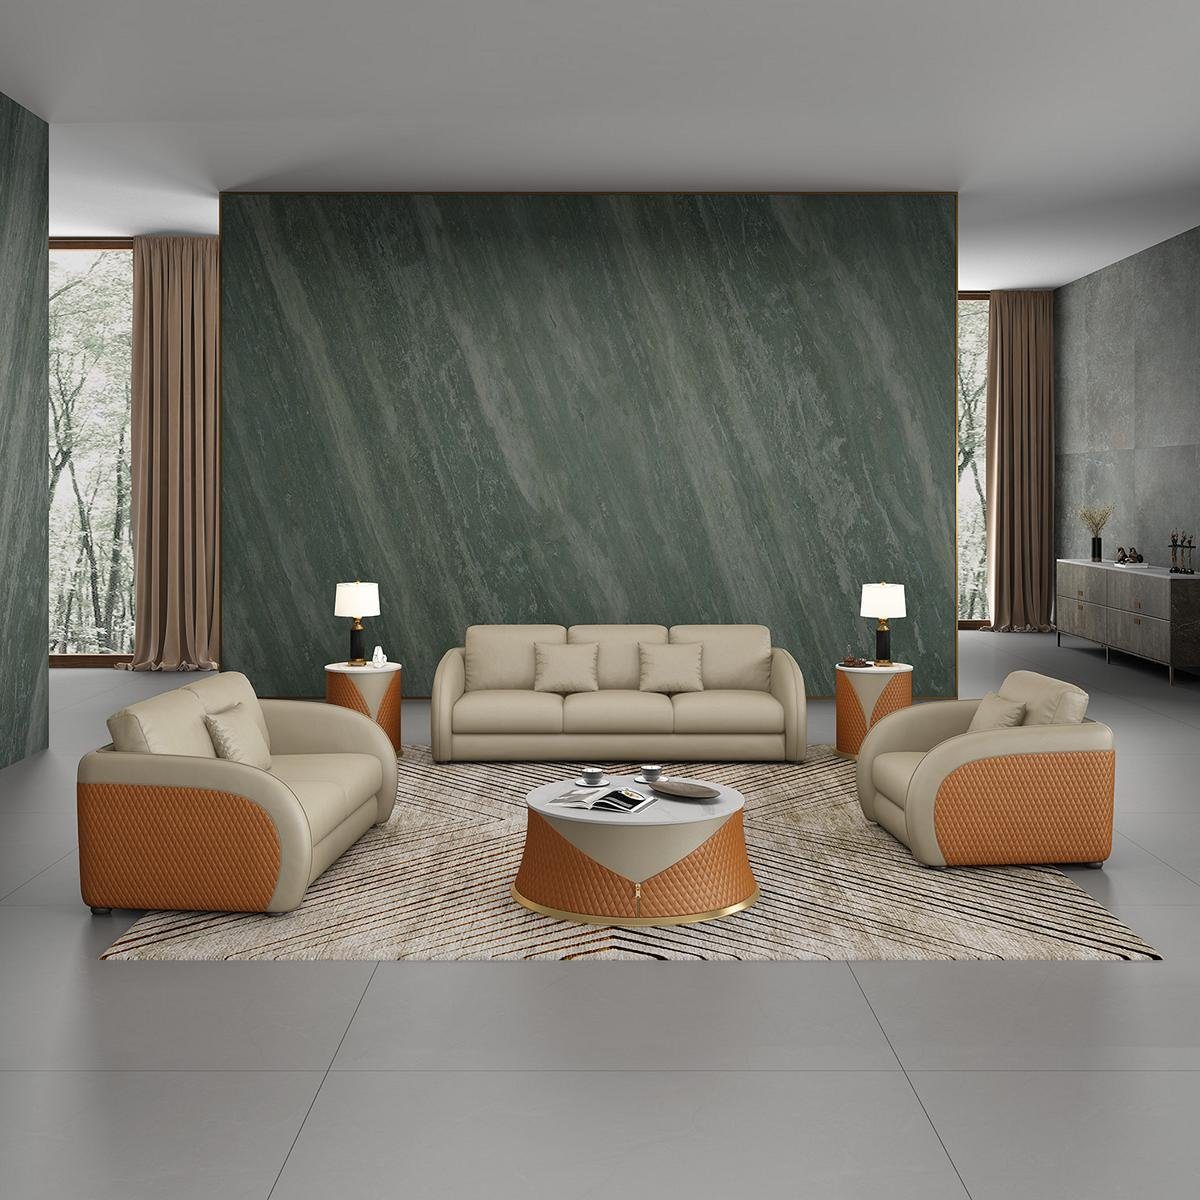 JVmoebel Wohnzimmer-Set, Sofa Sofagarnitur 3 1 Sitzer Set Design Polster Couchen Couch Modern Braun/Orange